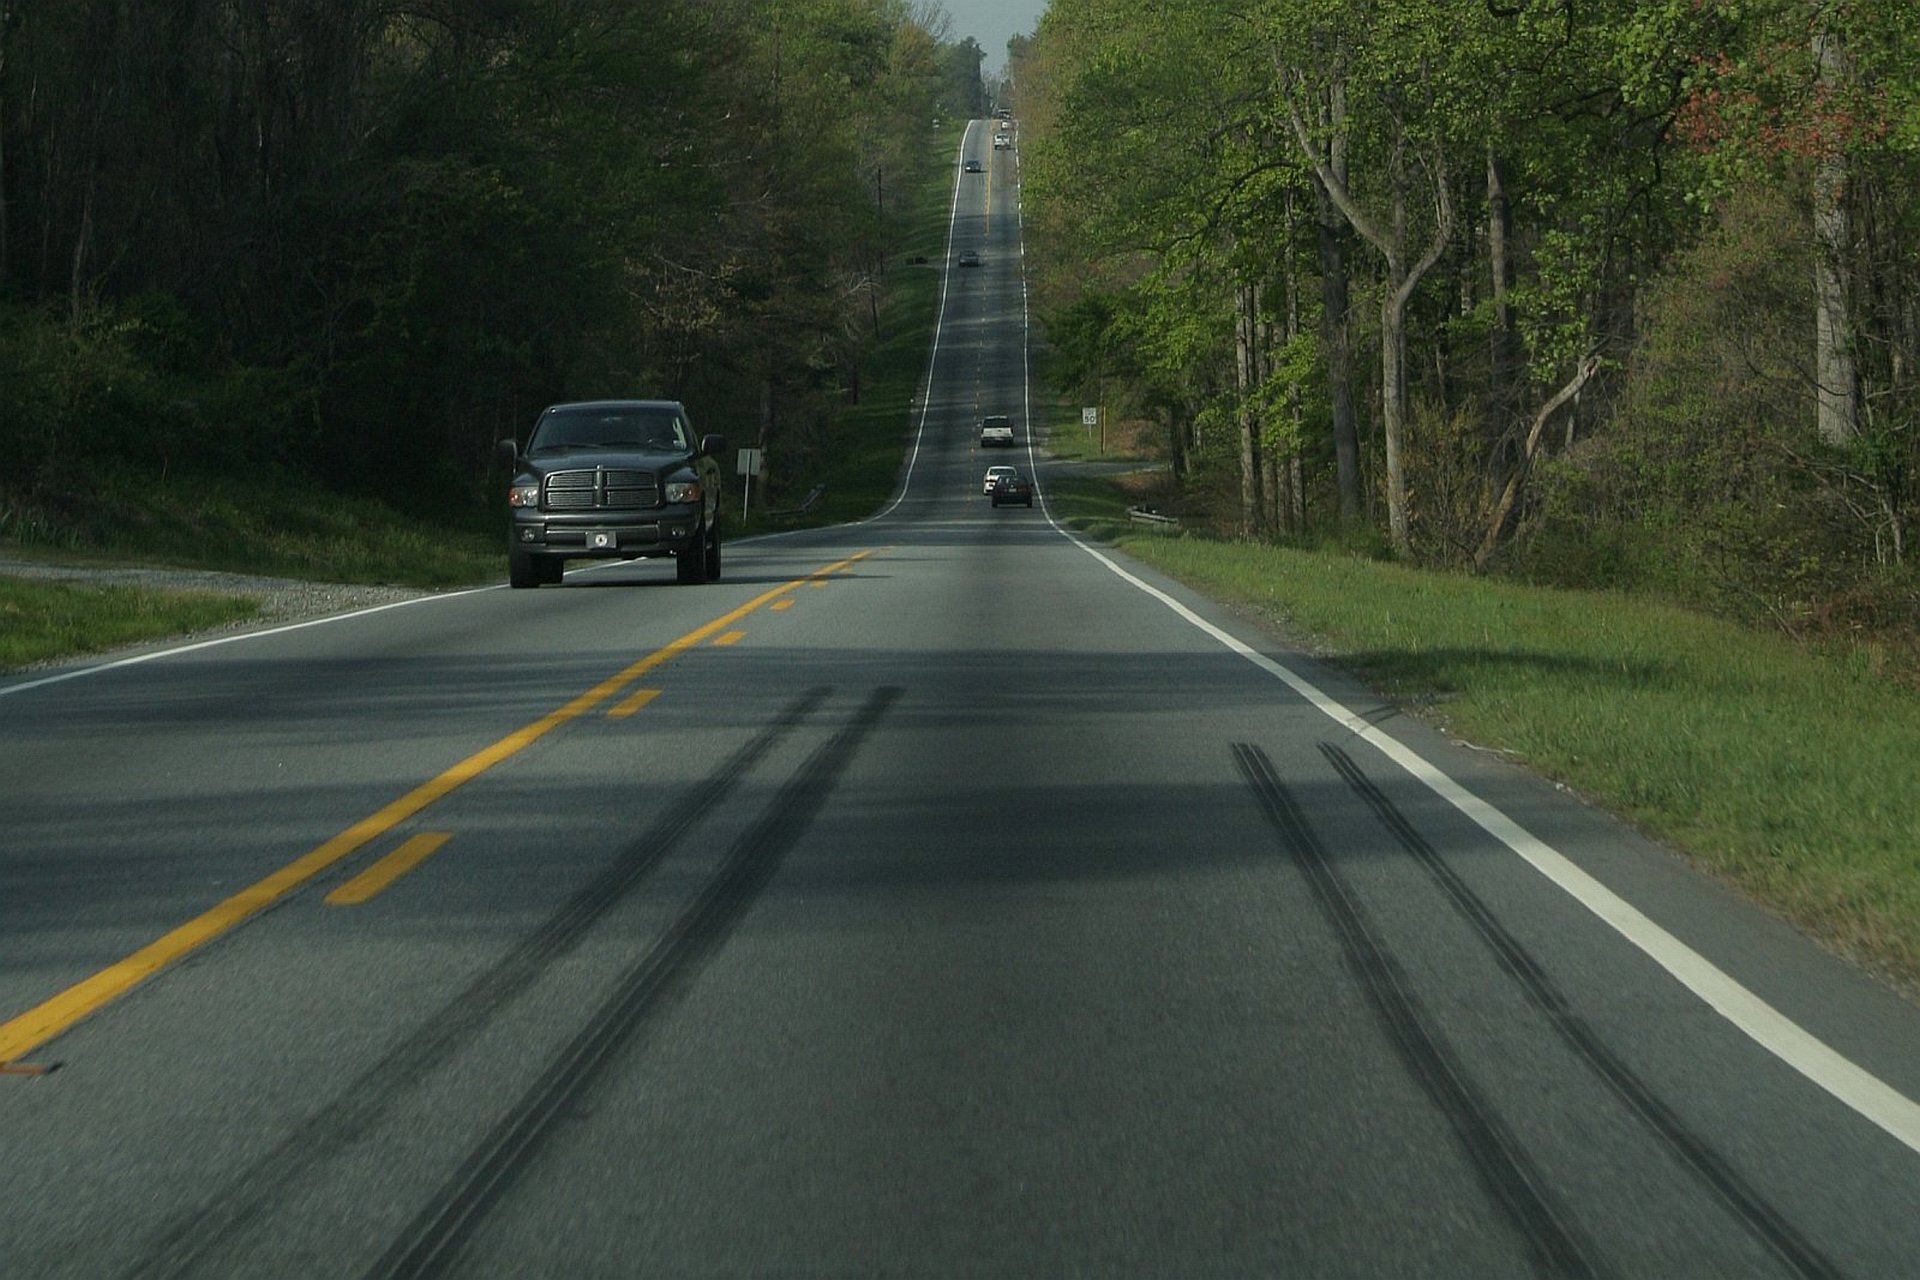 Zdjęcie przedstawia drogę z jadącymi samochodami z wysokim wzniesieniem w tle, aparat znajduje się nisko nad asfaltem. Na pierwszym planie na asfalcie widać ślady po bardzo ostrym hamowaniu.